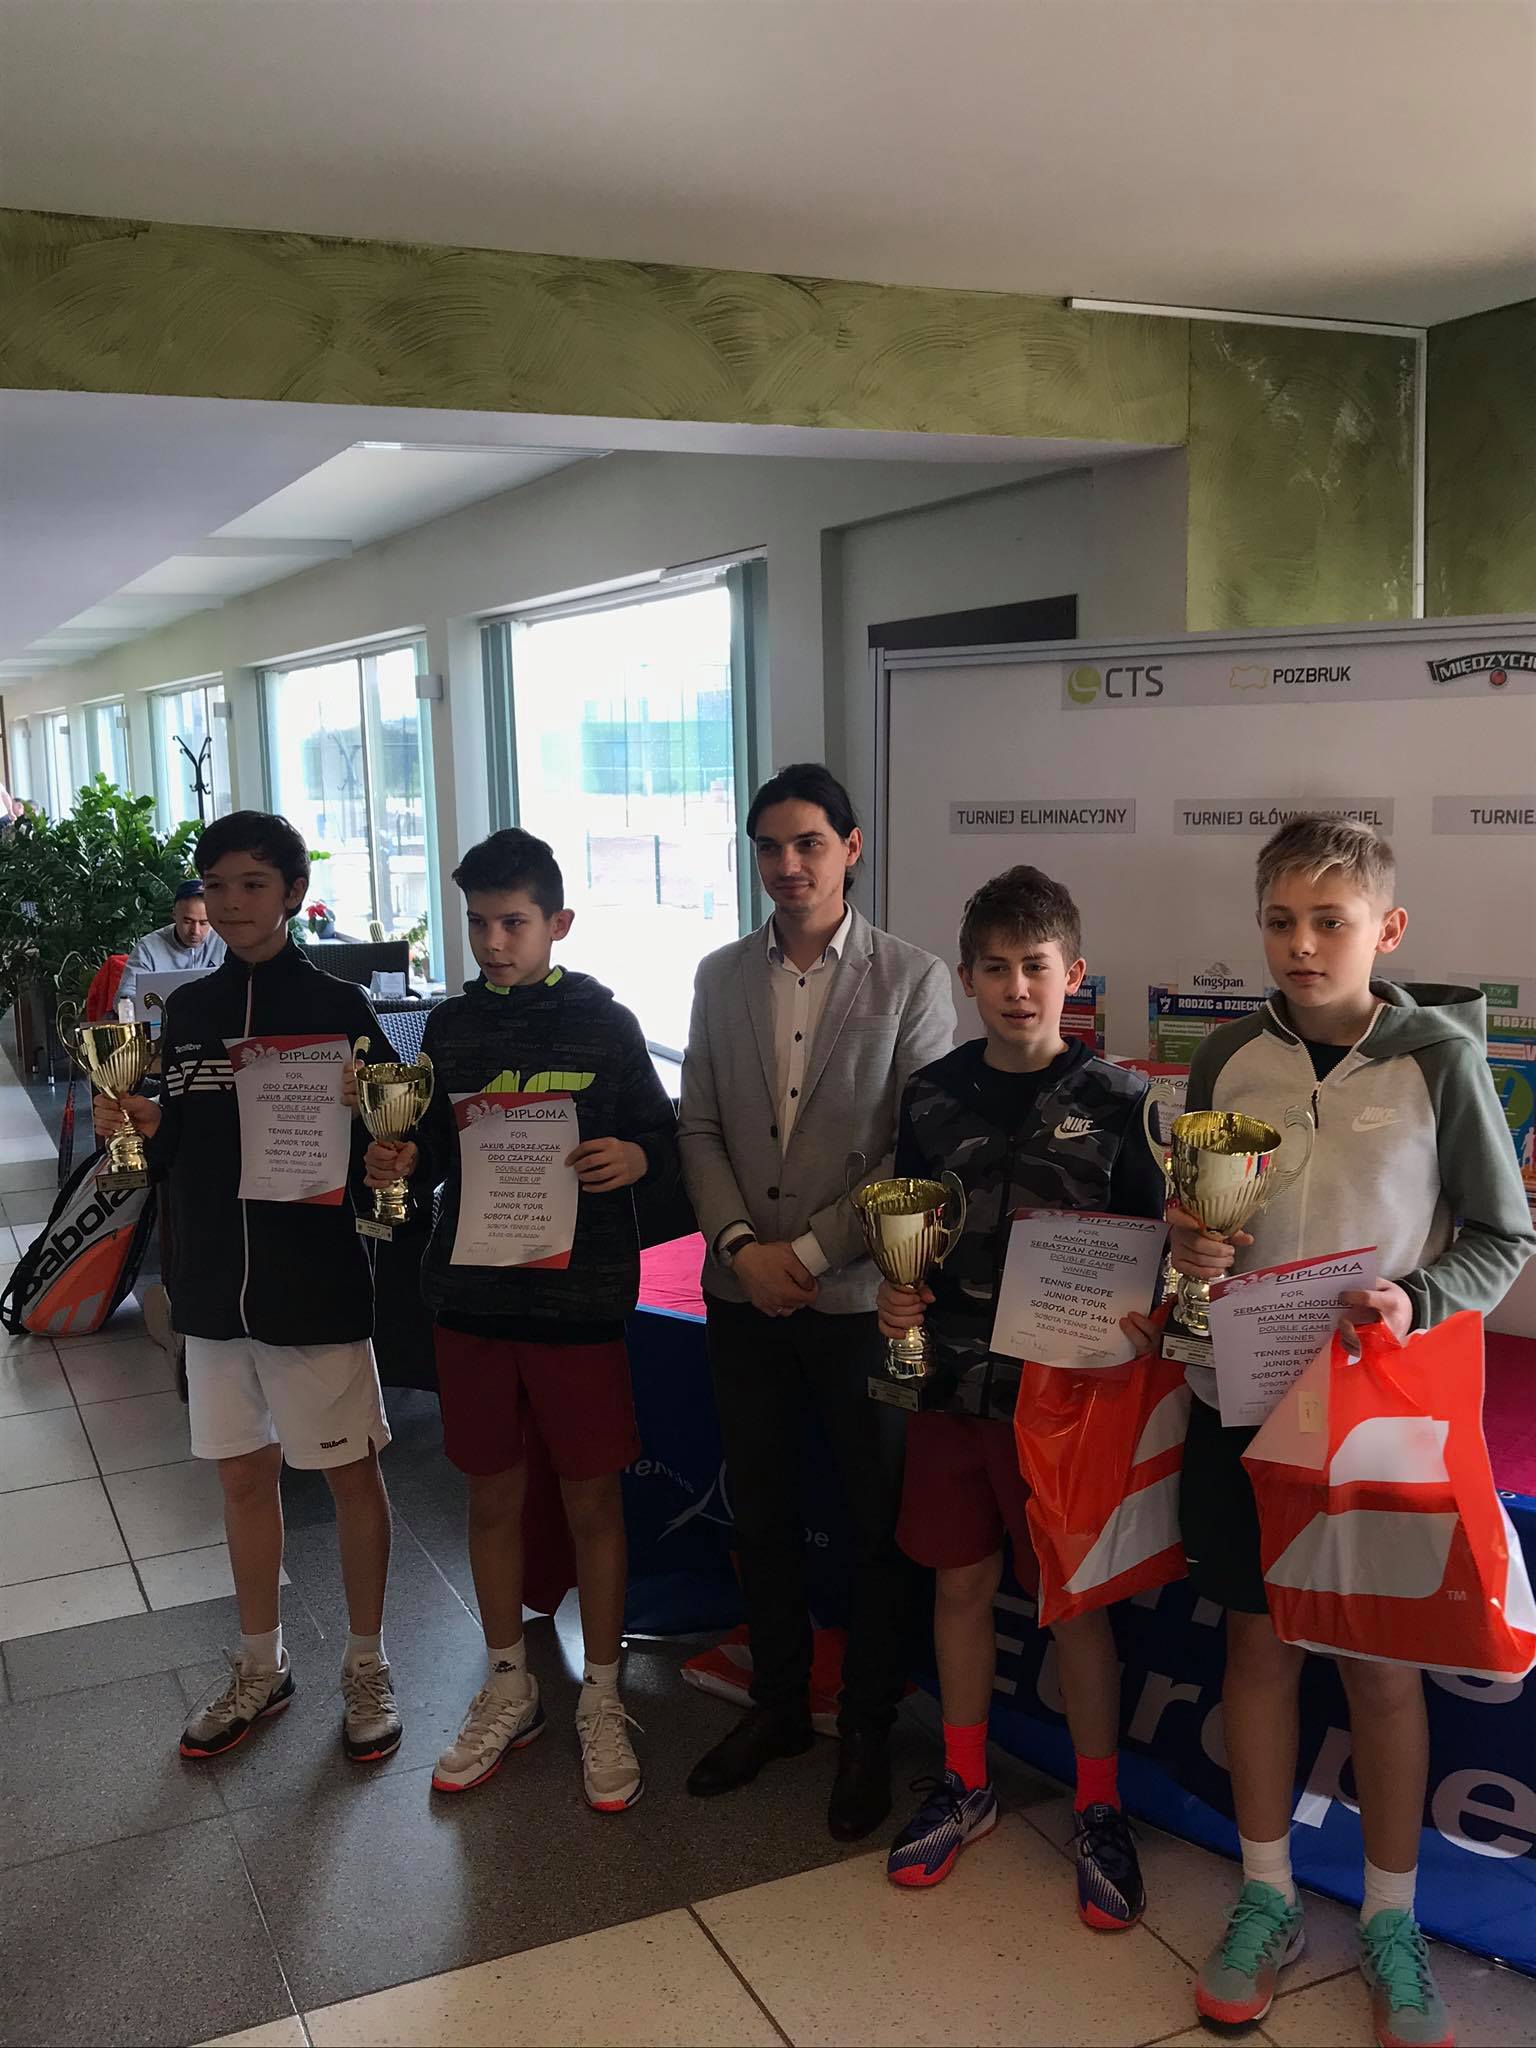 Na zdjęciu zwycięzcy Międzynarodowego Turnieju do lat 14 Sobota Cup Tennis Europe prezentujący zdobyte nagrody i dyplomy oraz menedżer turnieju - Wojciech Jaraczewski.